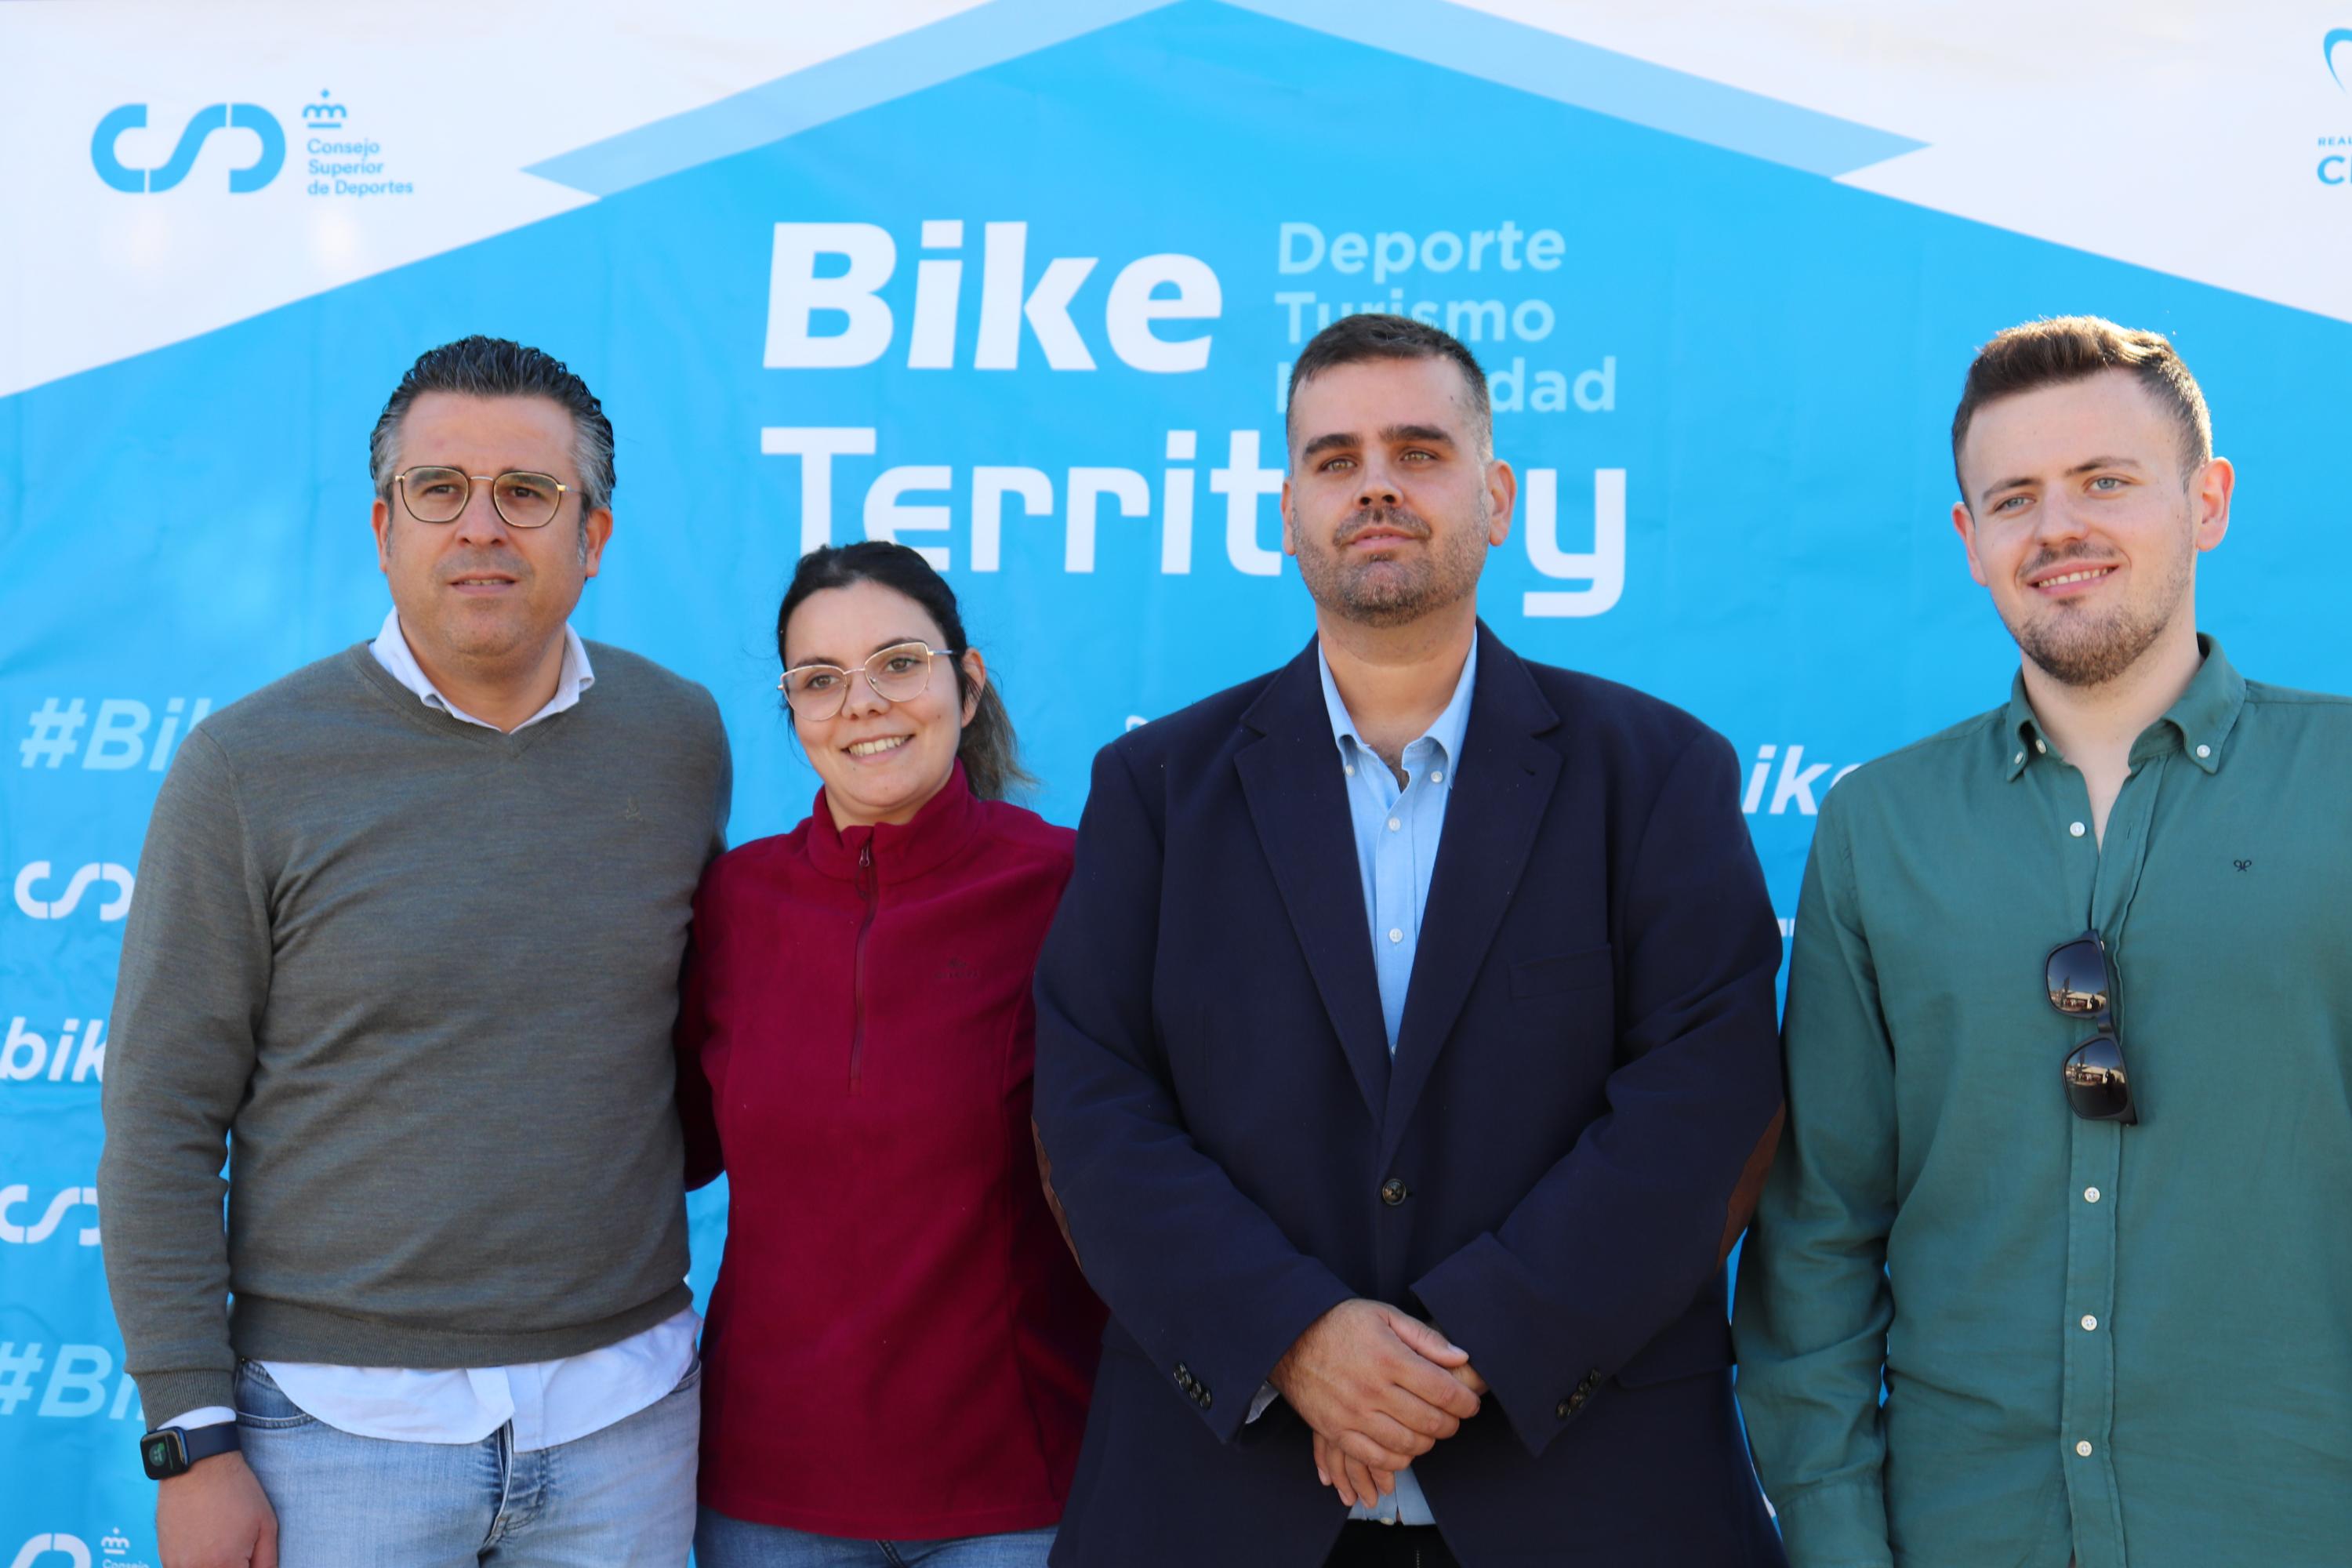 Sierra Norte de Málaga, primer centro Bike Territory en Andalucía